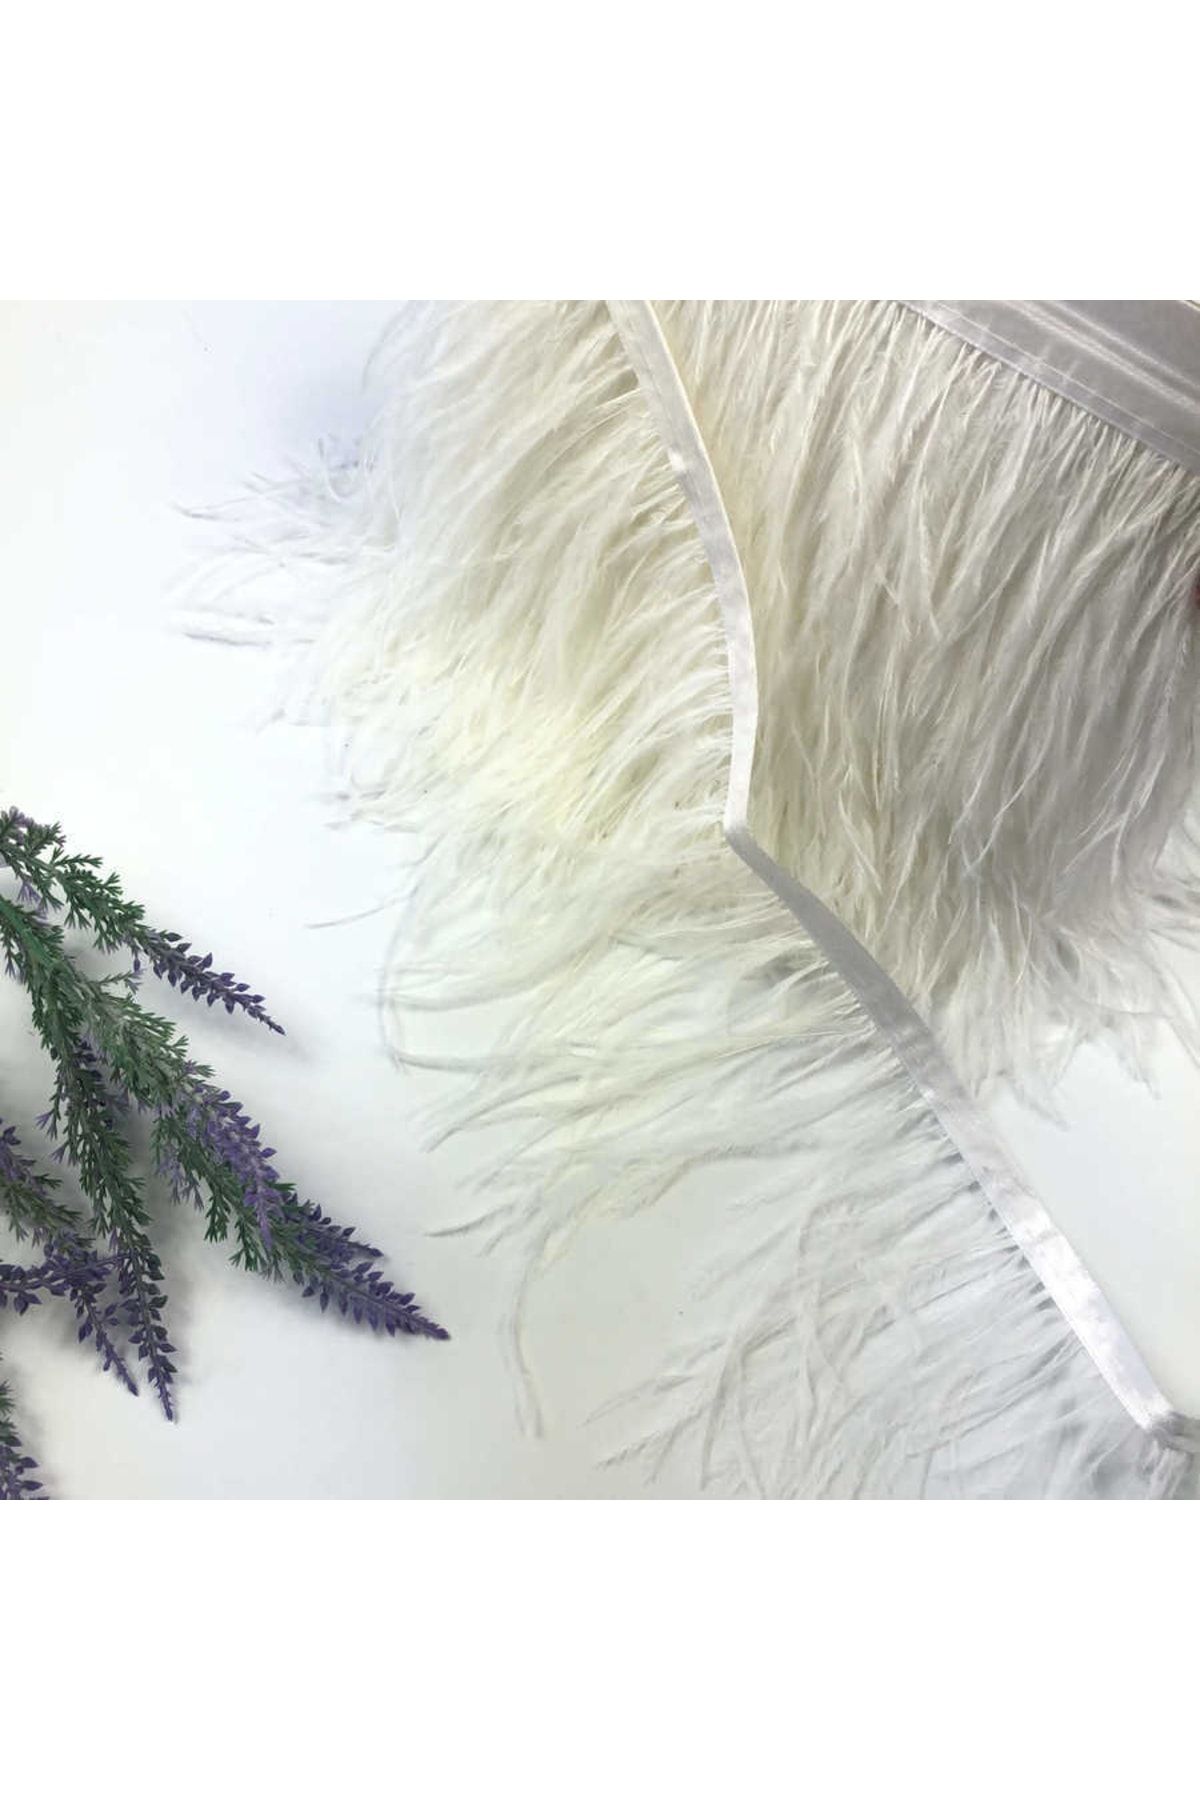 Genel Markalar Elbise Için Beyaz Deve Kuşu Tüyü Şerit Halinde 100 cm